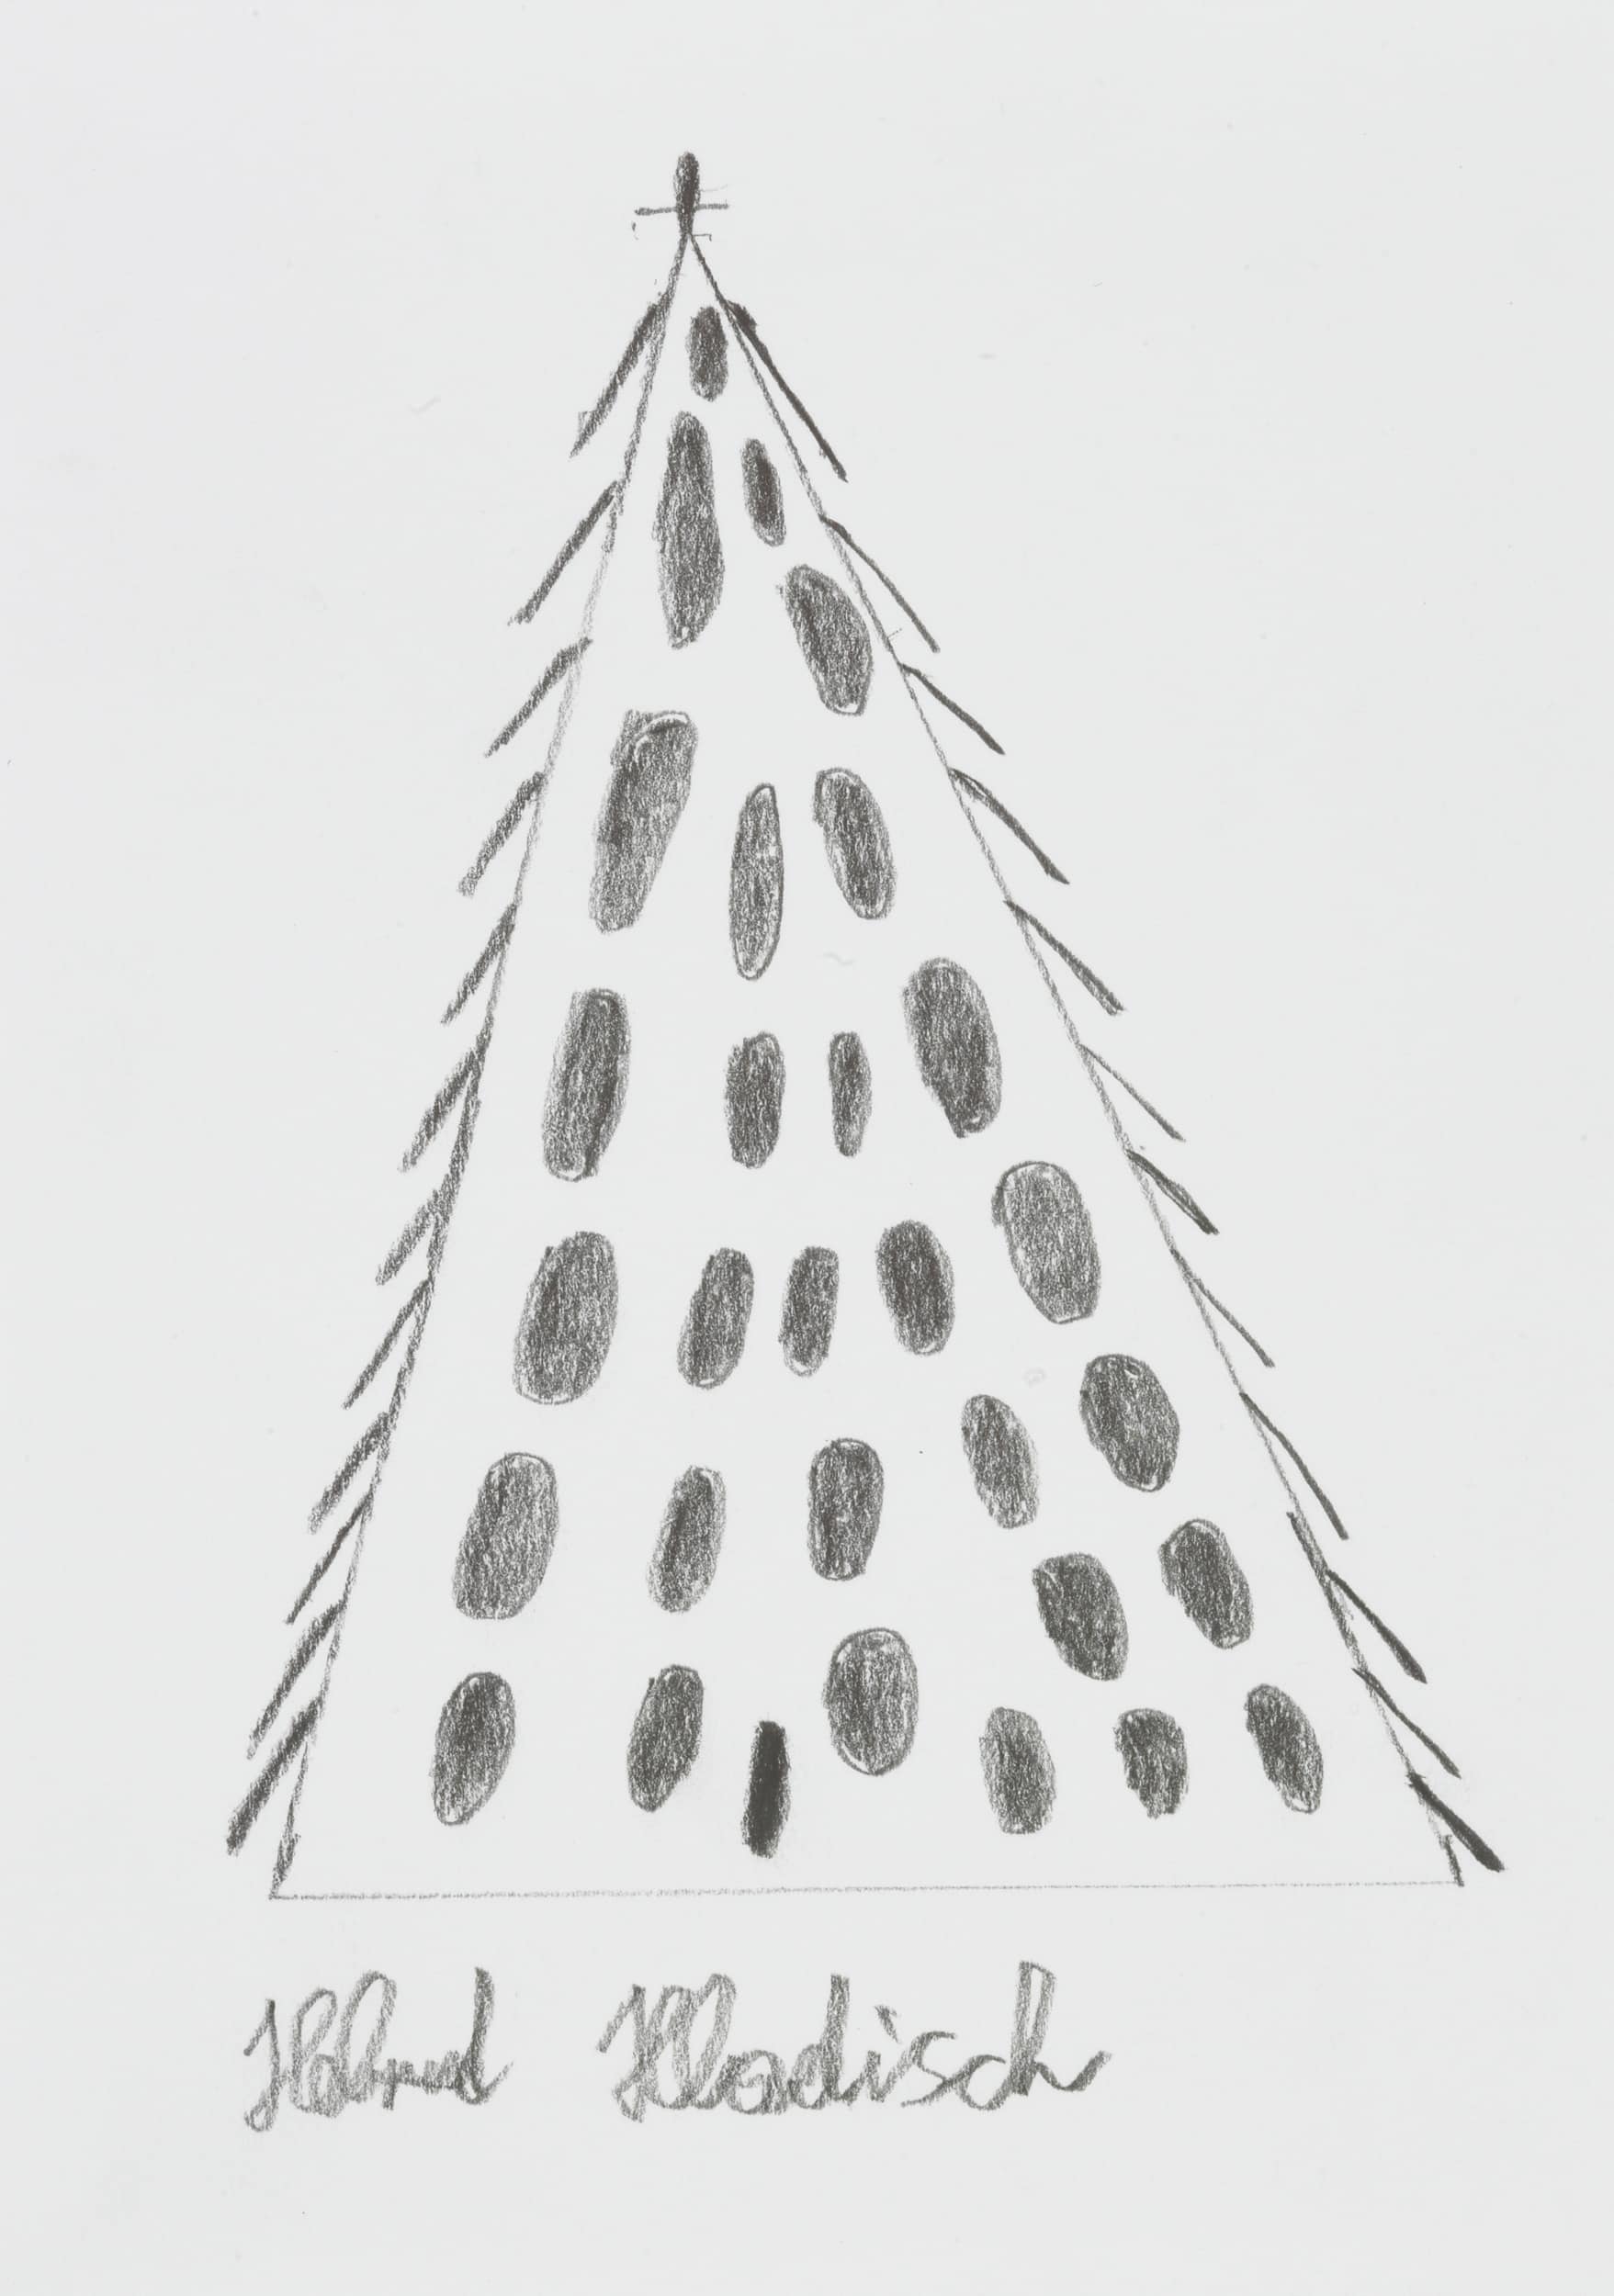 hladisch helmut - Tannenbaum / Fir tree